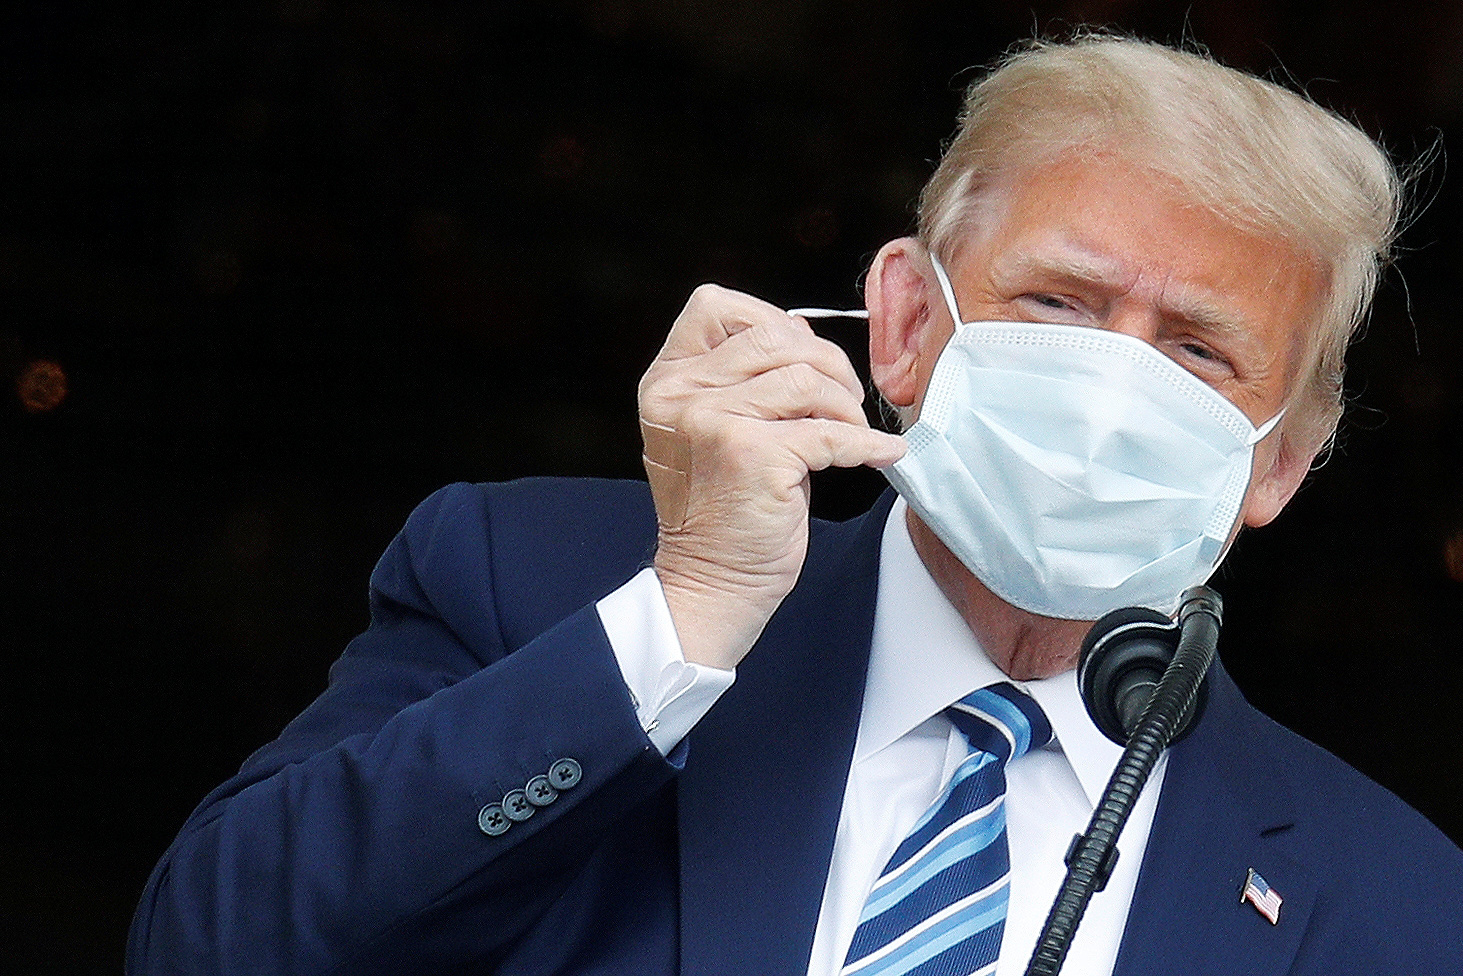 El presidente de EEUU, Donald Trump, usando una mascarilla